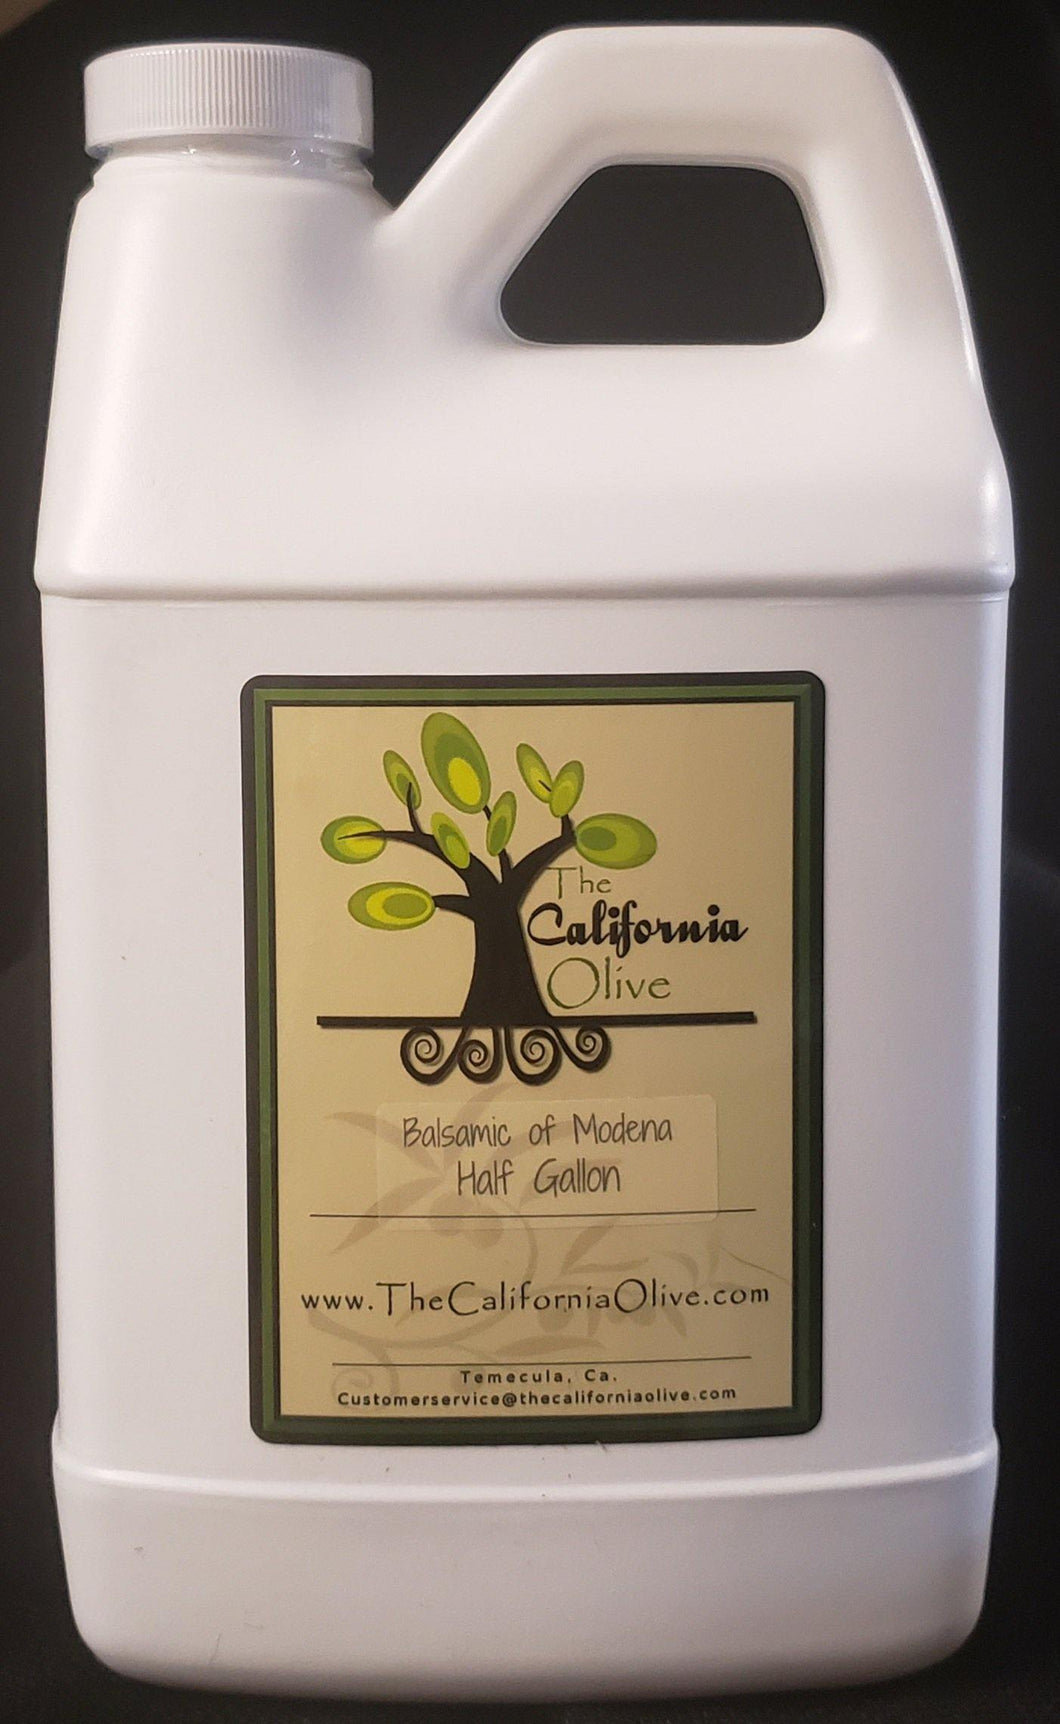 Balsamic of Modena, half gallon - The California Olive